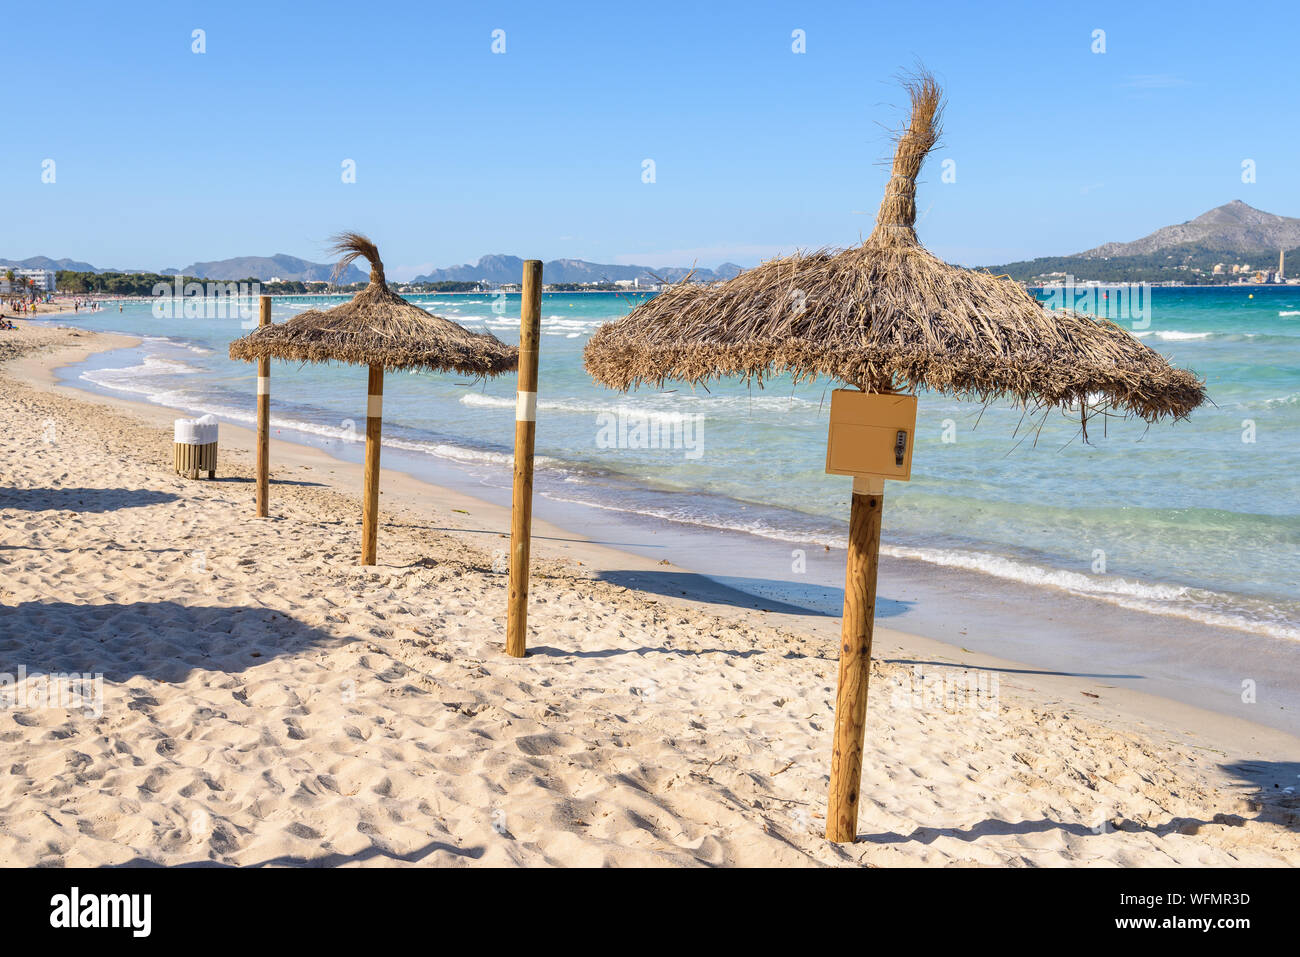 Umbrellas at the Playa de Muro beach in Mallorca, Spain Stock Photo